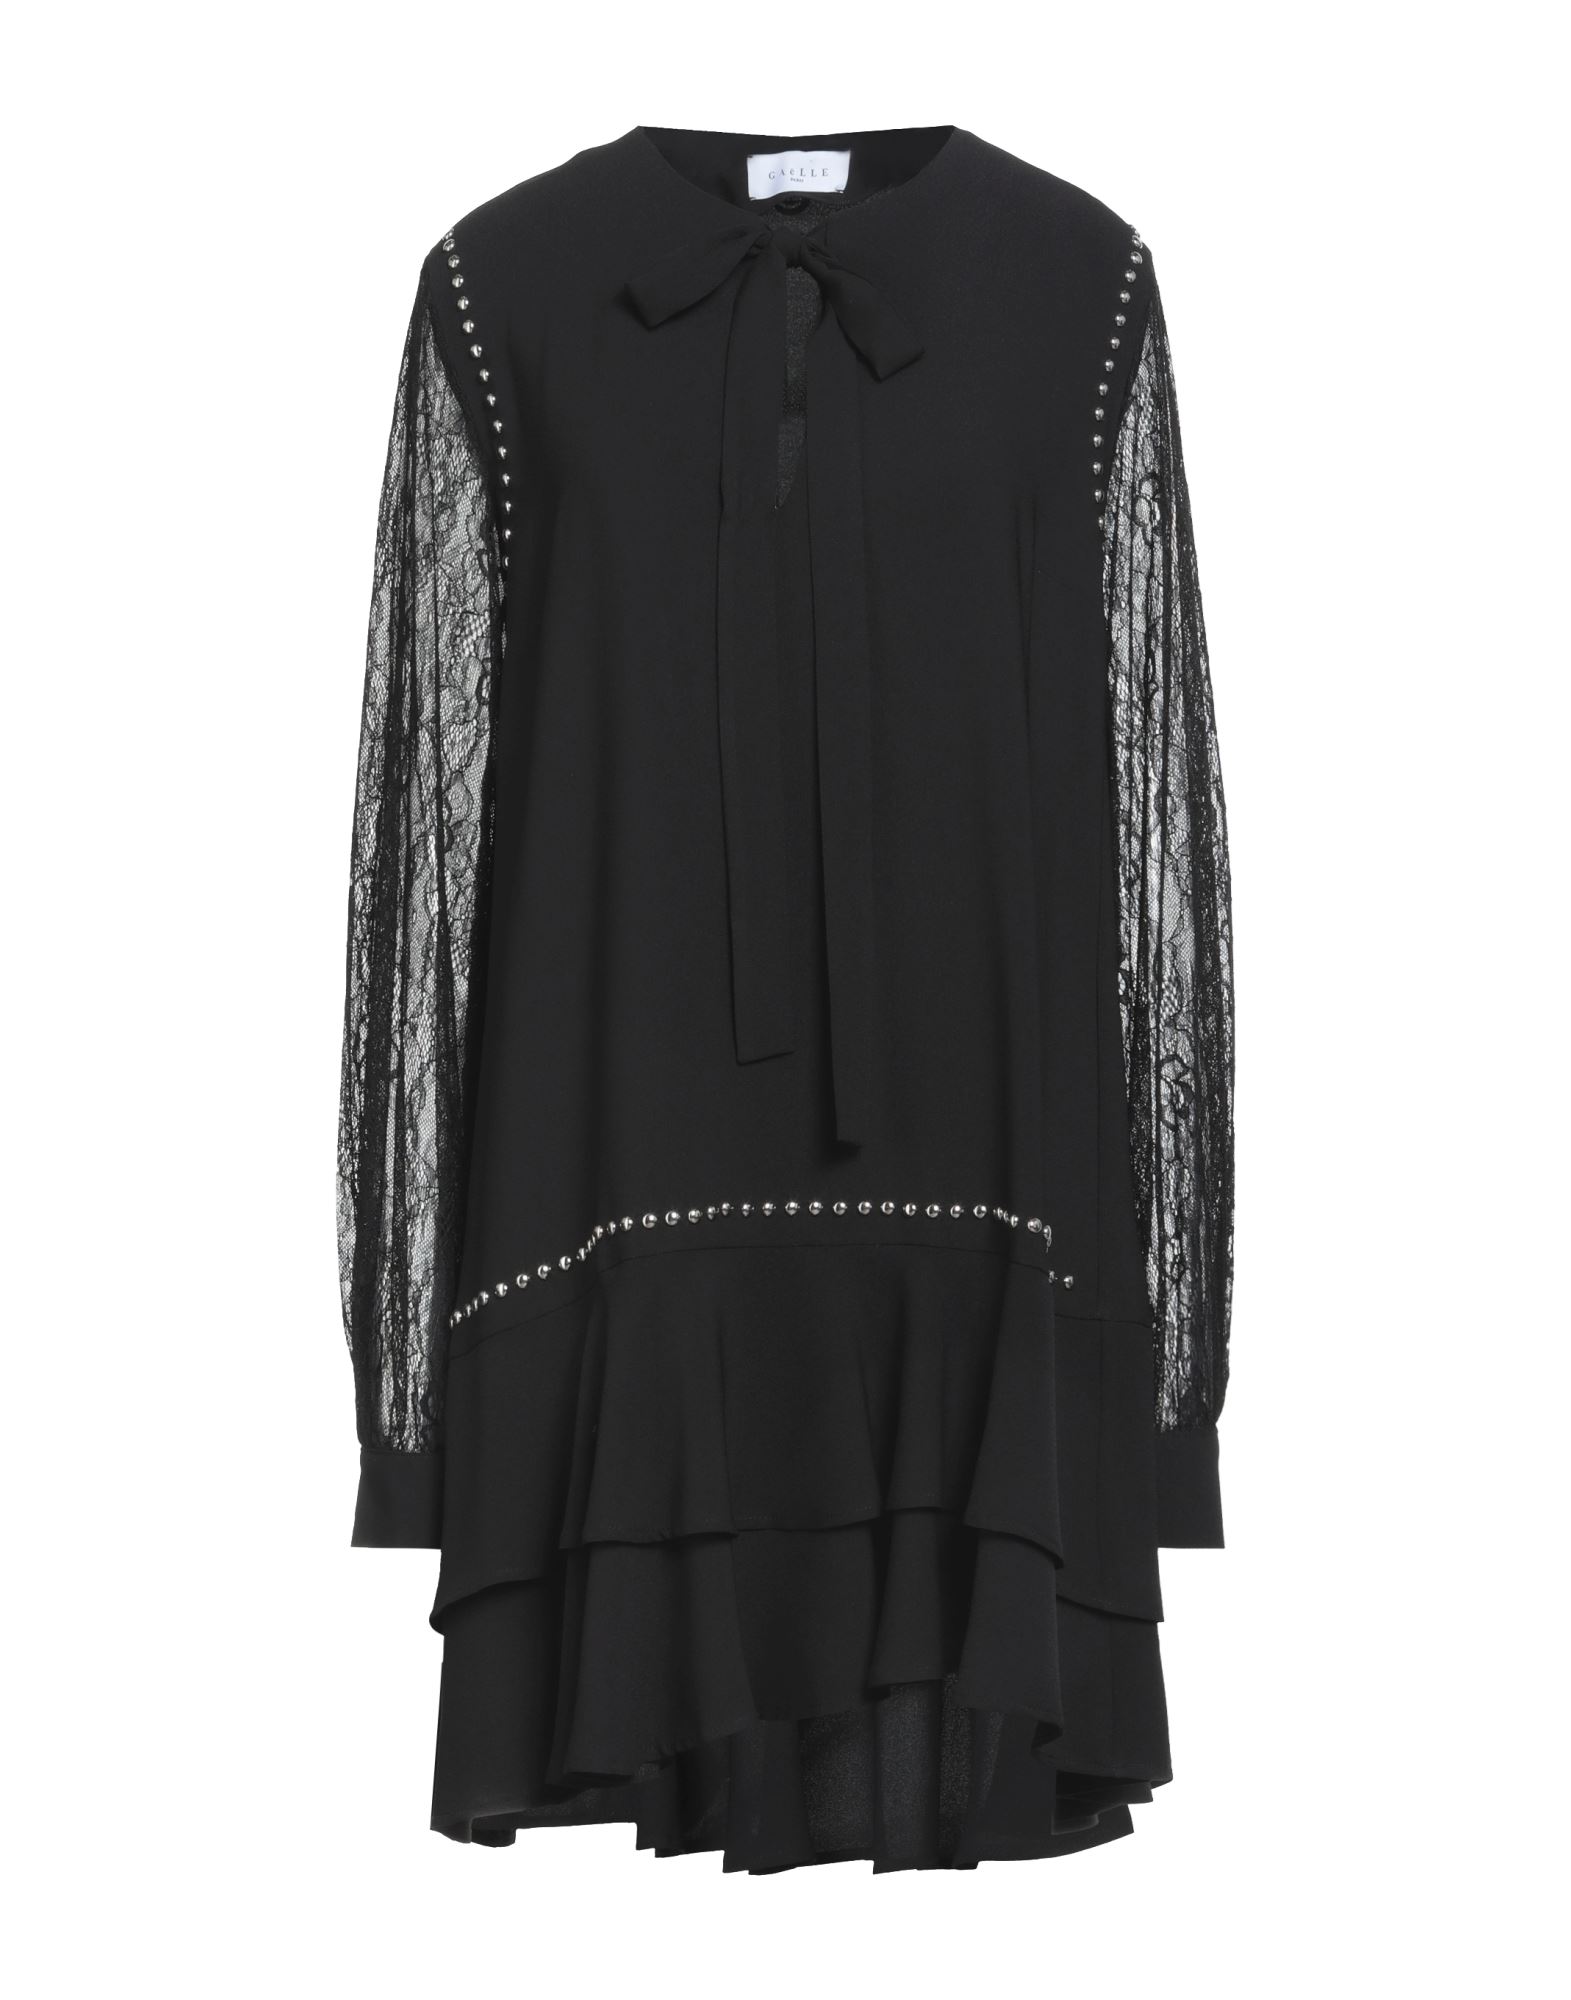 Shop Gaelle Paris Gaëlle Paris Woman Mini Dress Black Size 4 Polyester